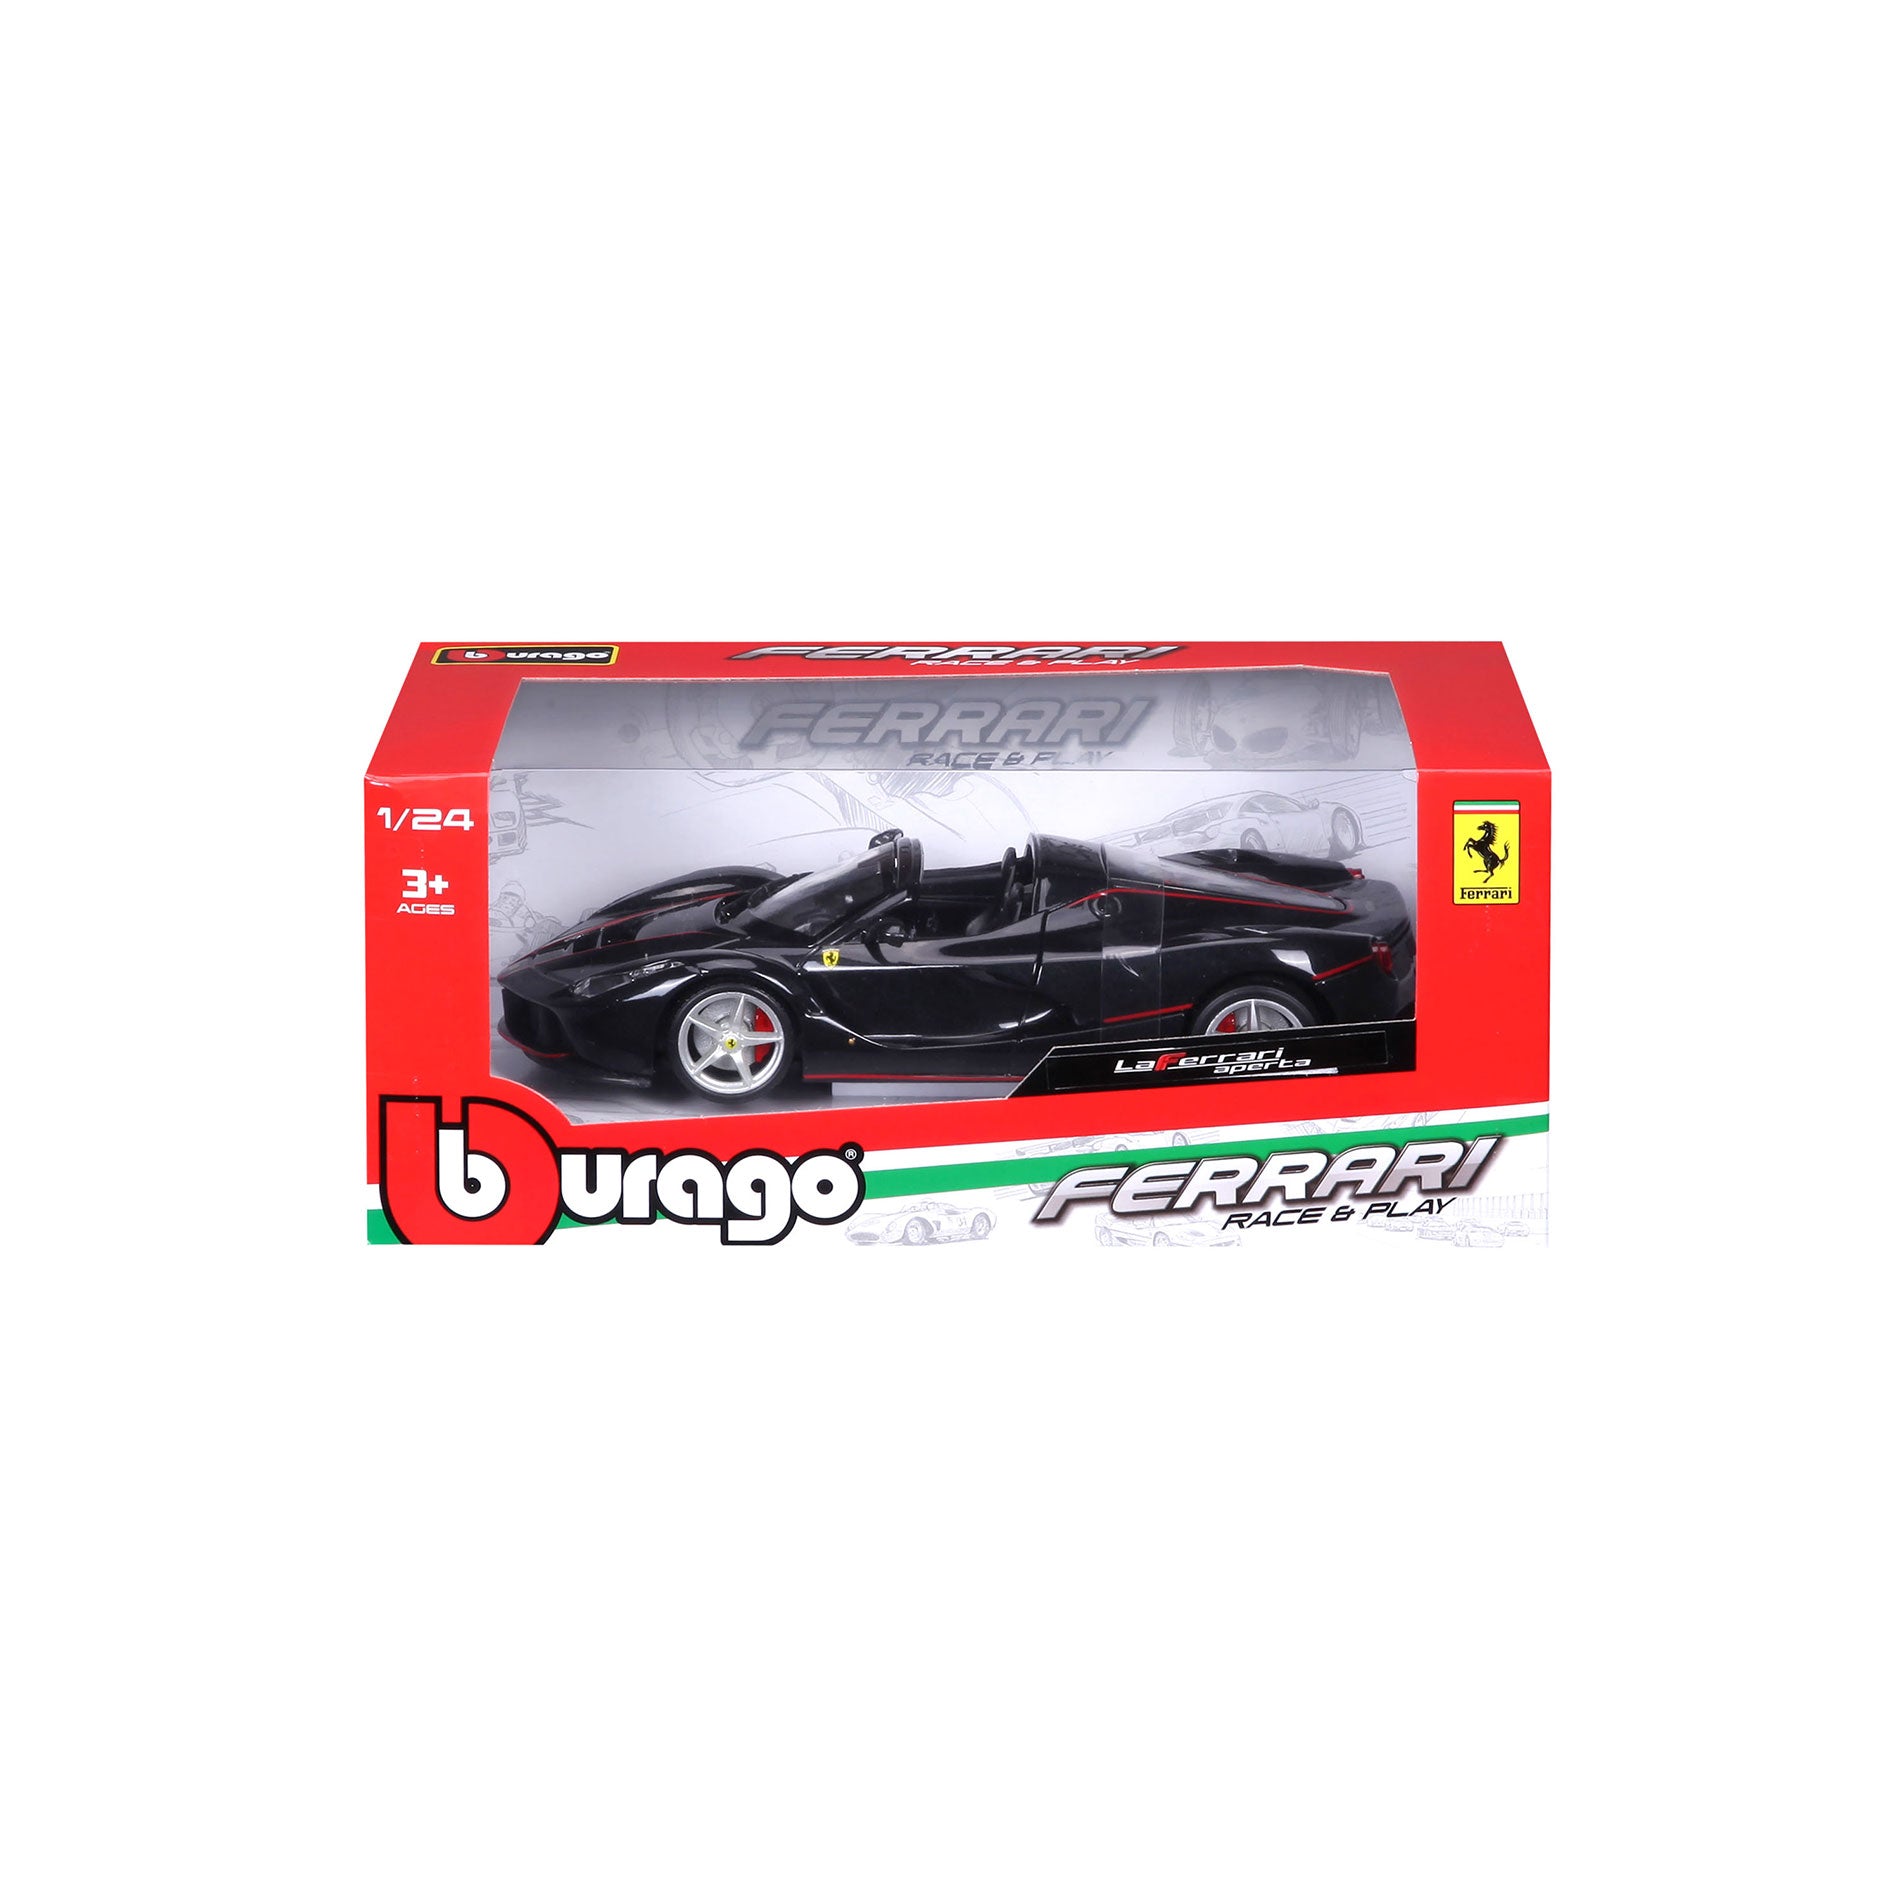 18-26022 - Bburago - 1:24 - Ferrari R&P - LaFerrari aperta Nera